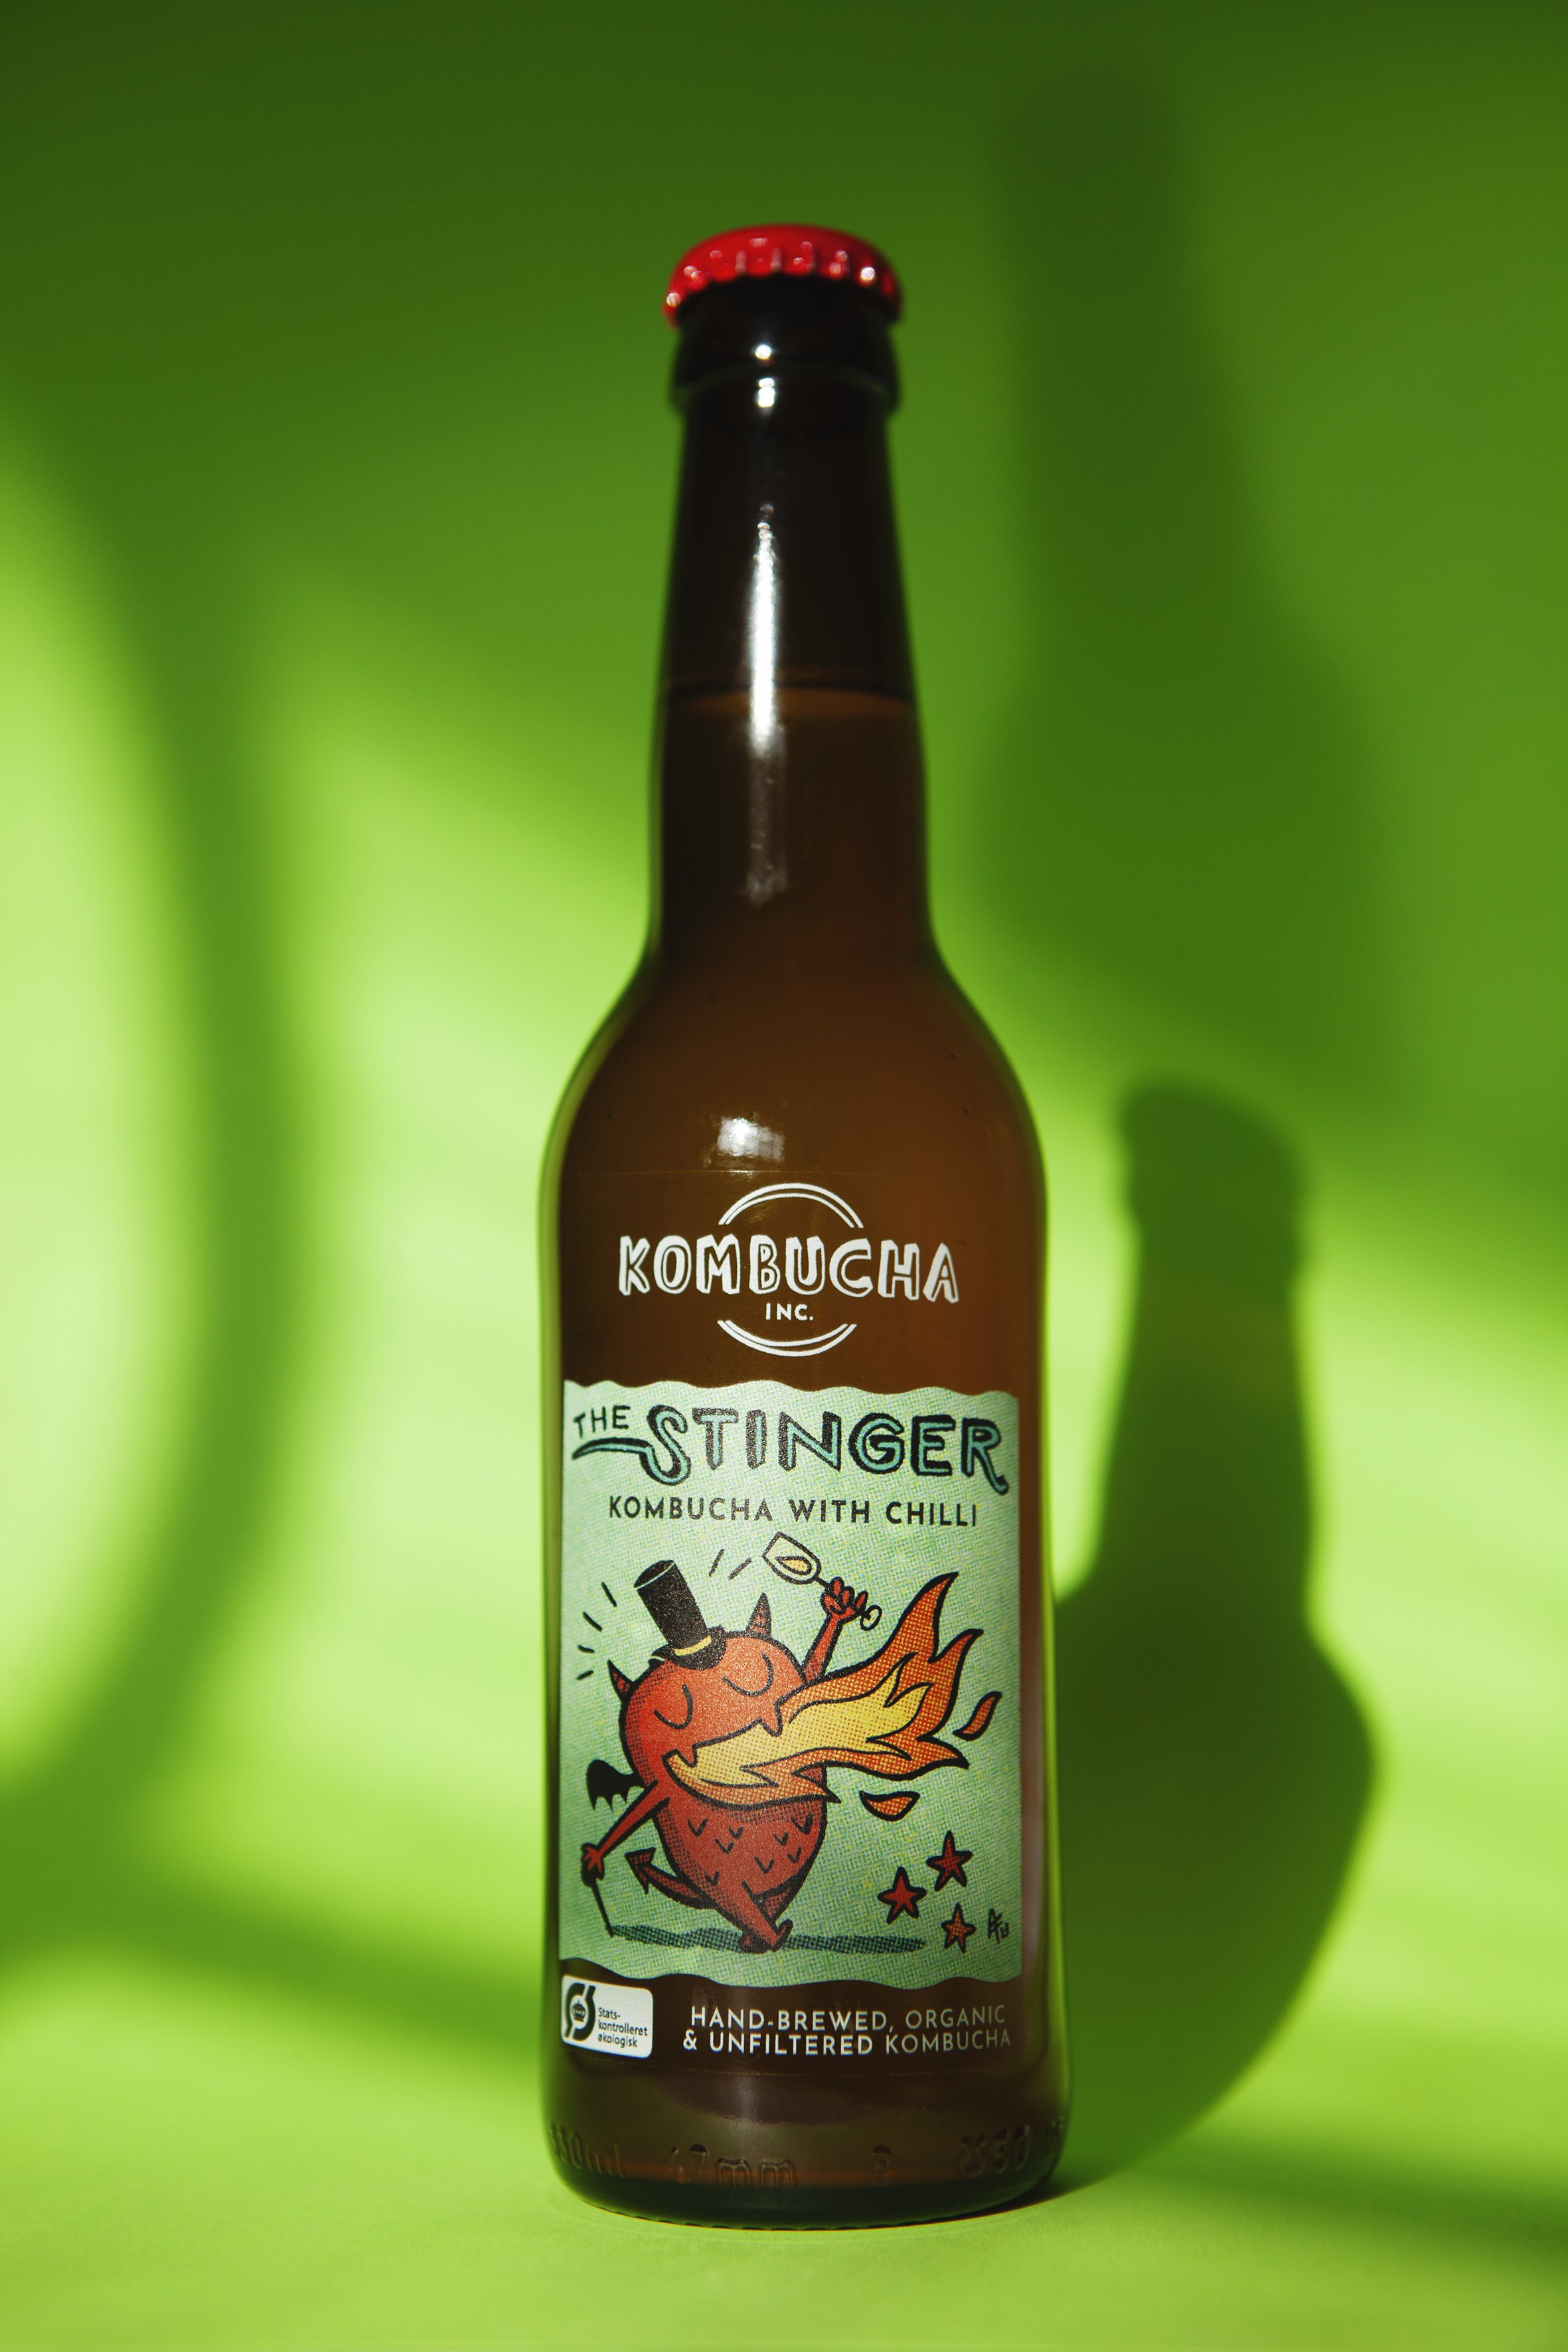 The-Stinger-Kombucha-Inc-bottle.jpg